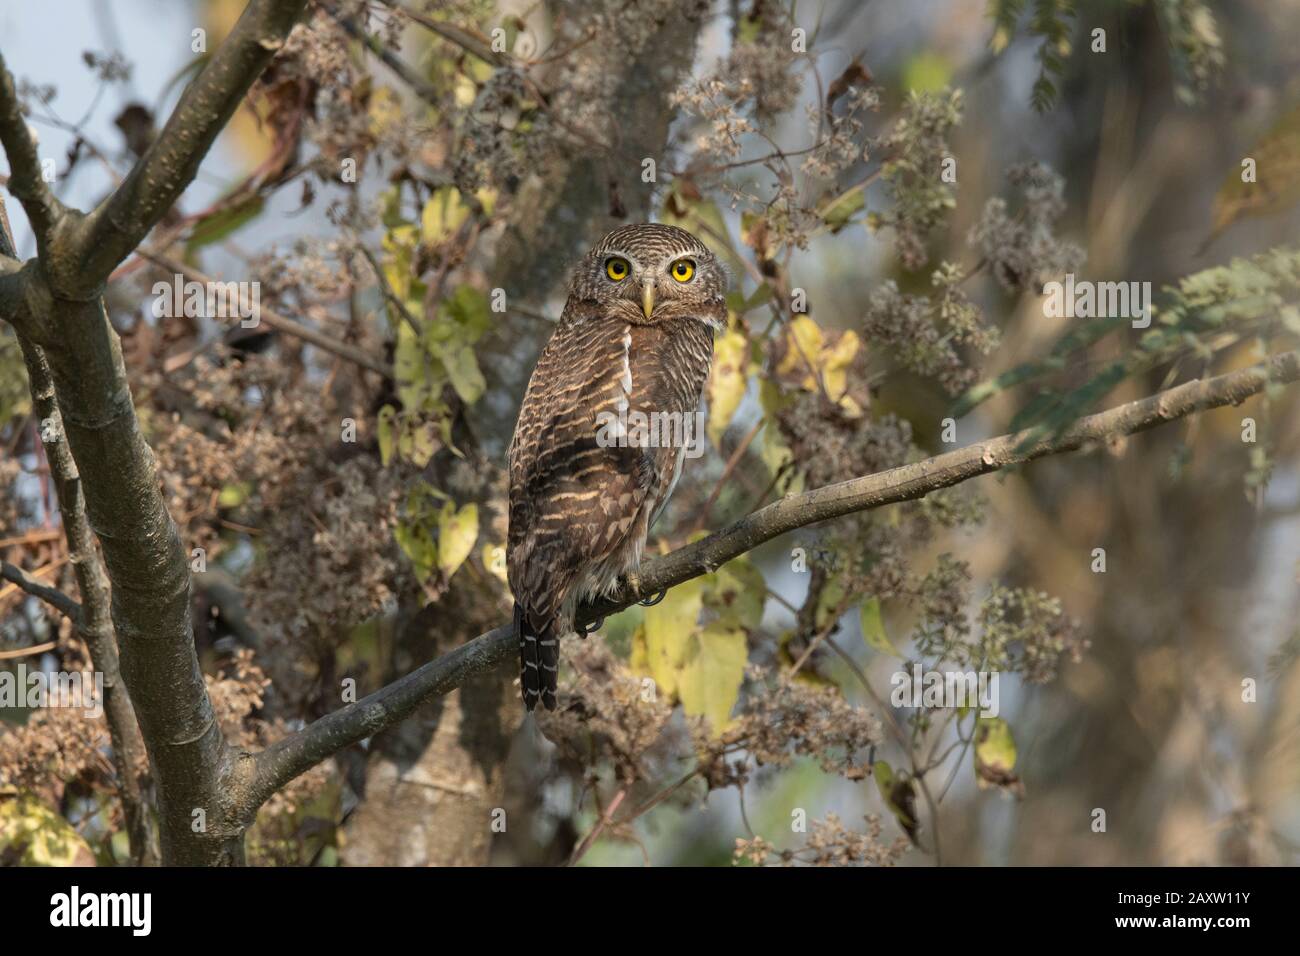 Owlet rouge asiatique, cucuculoides de Glaucidium, Maguri Beel, sud-est du parc national de Dibru Saikhowa, district de Tinsukia, Assam supérieur, Inde Banque D'Images